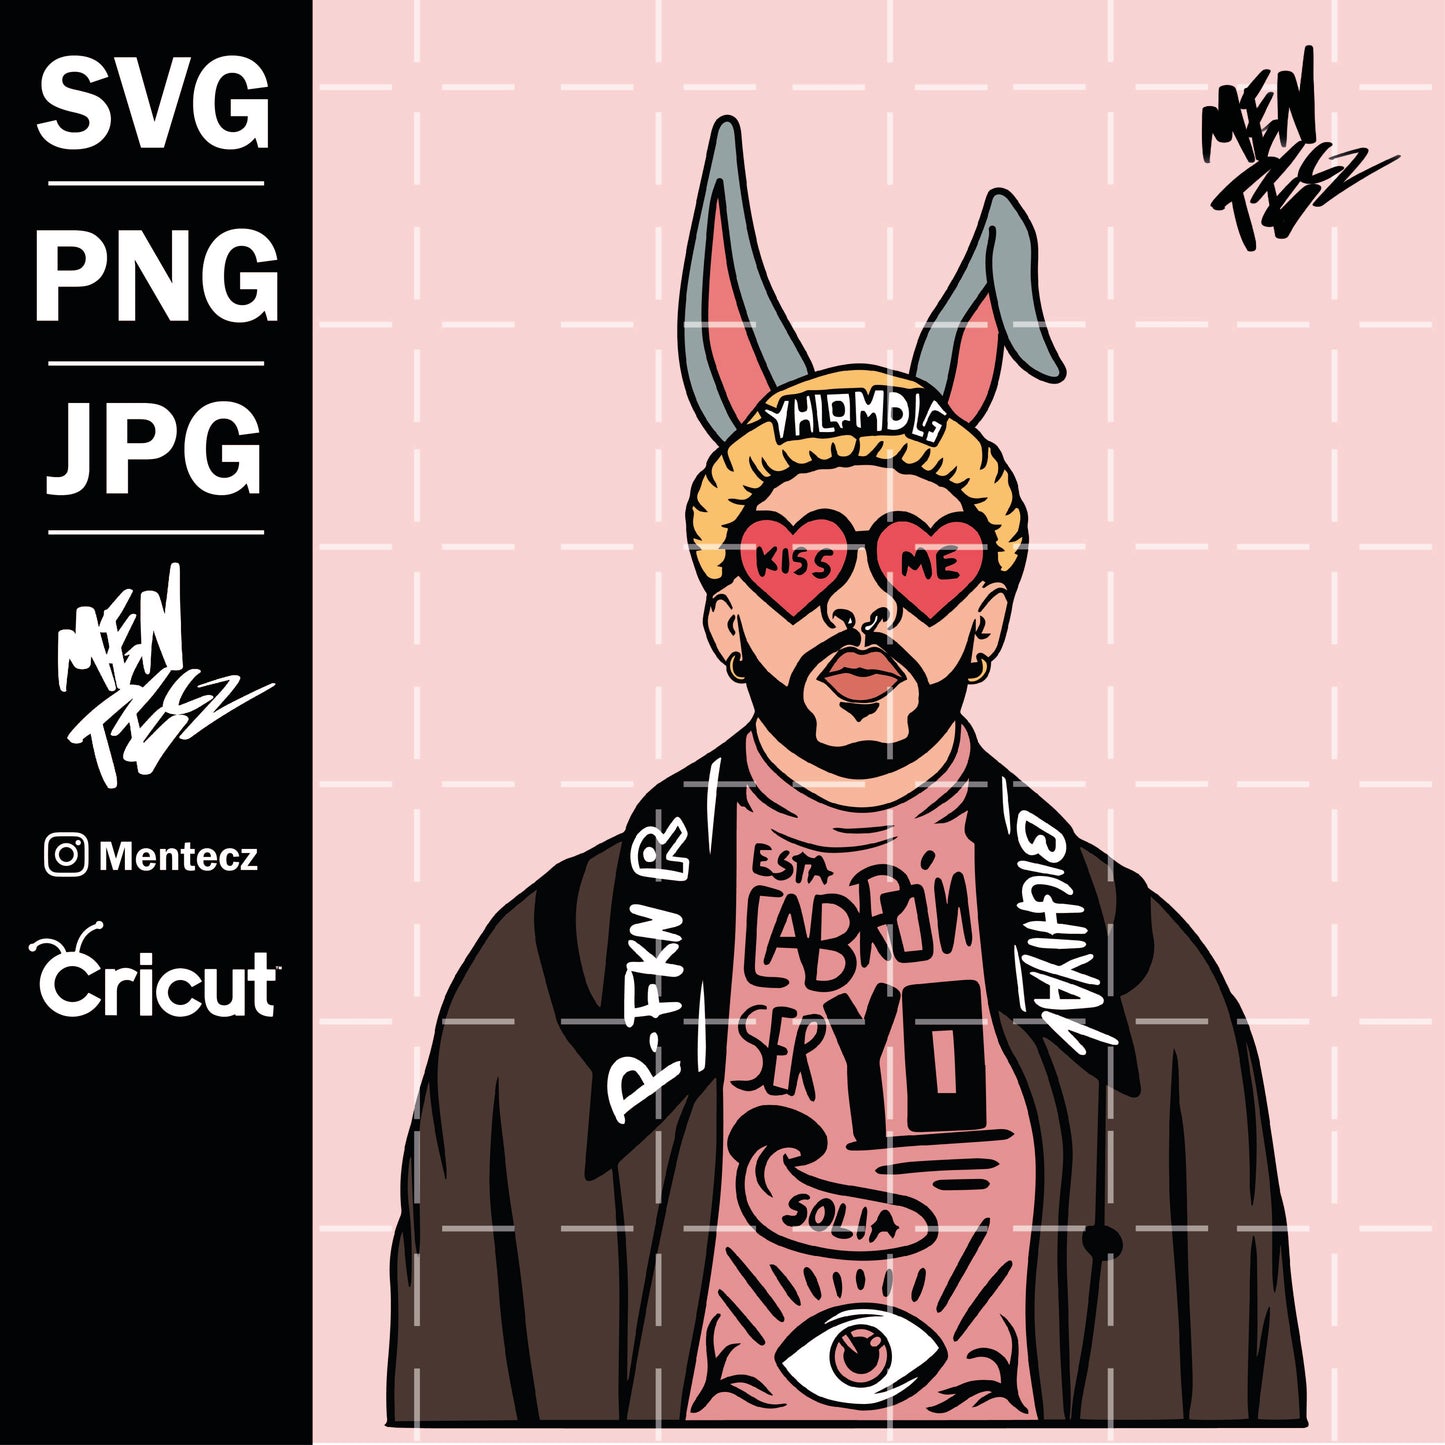 Bad Bunny Easter SVG, PNG & JPG Digital Download, San valentin, summer